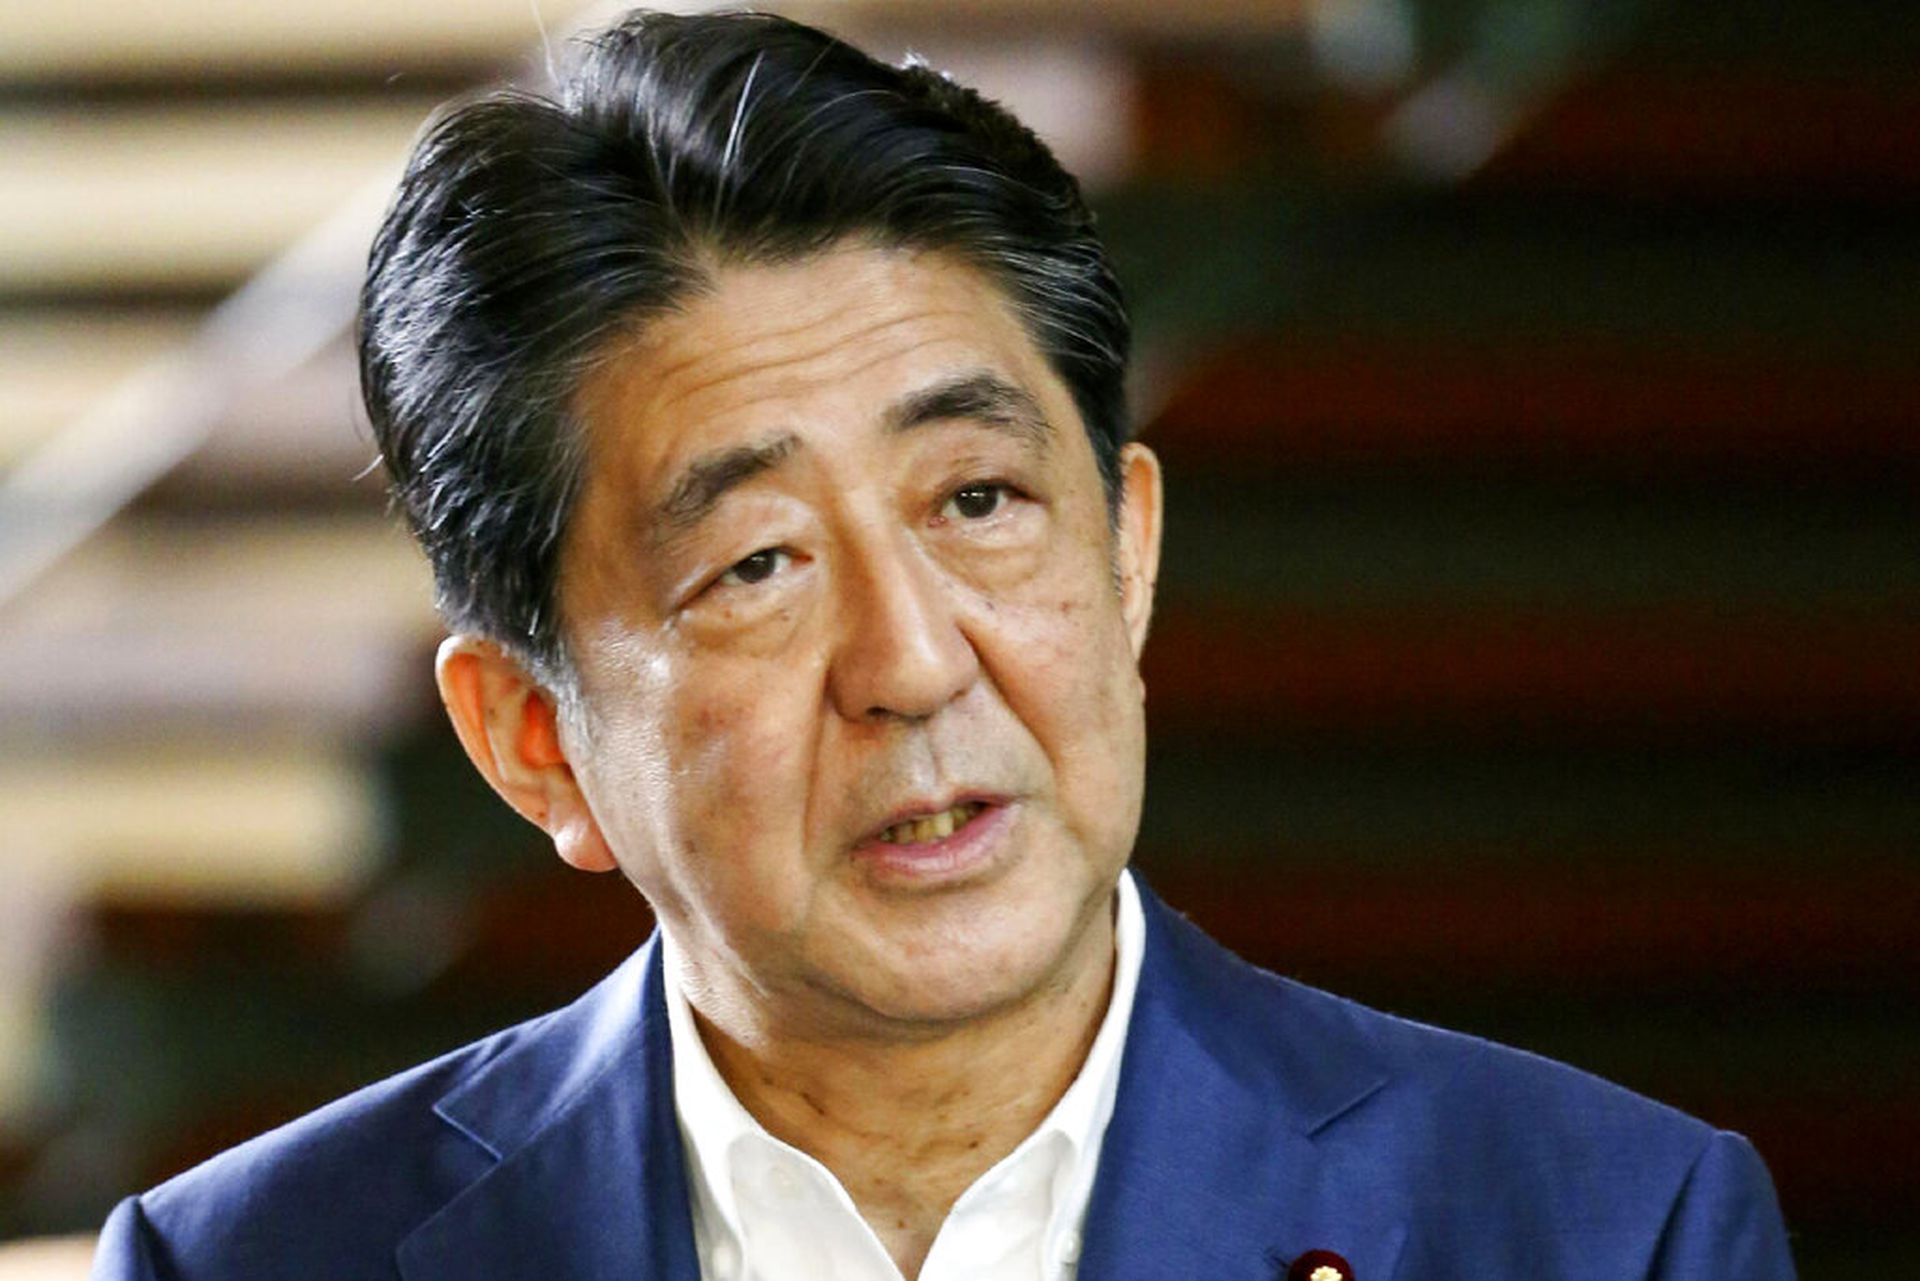 日本首相安倍晋三辞职后安倍时代提前到来 多维新闻 全球